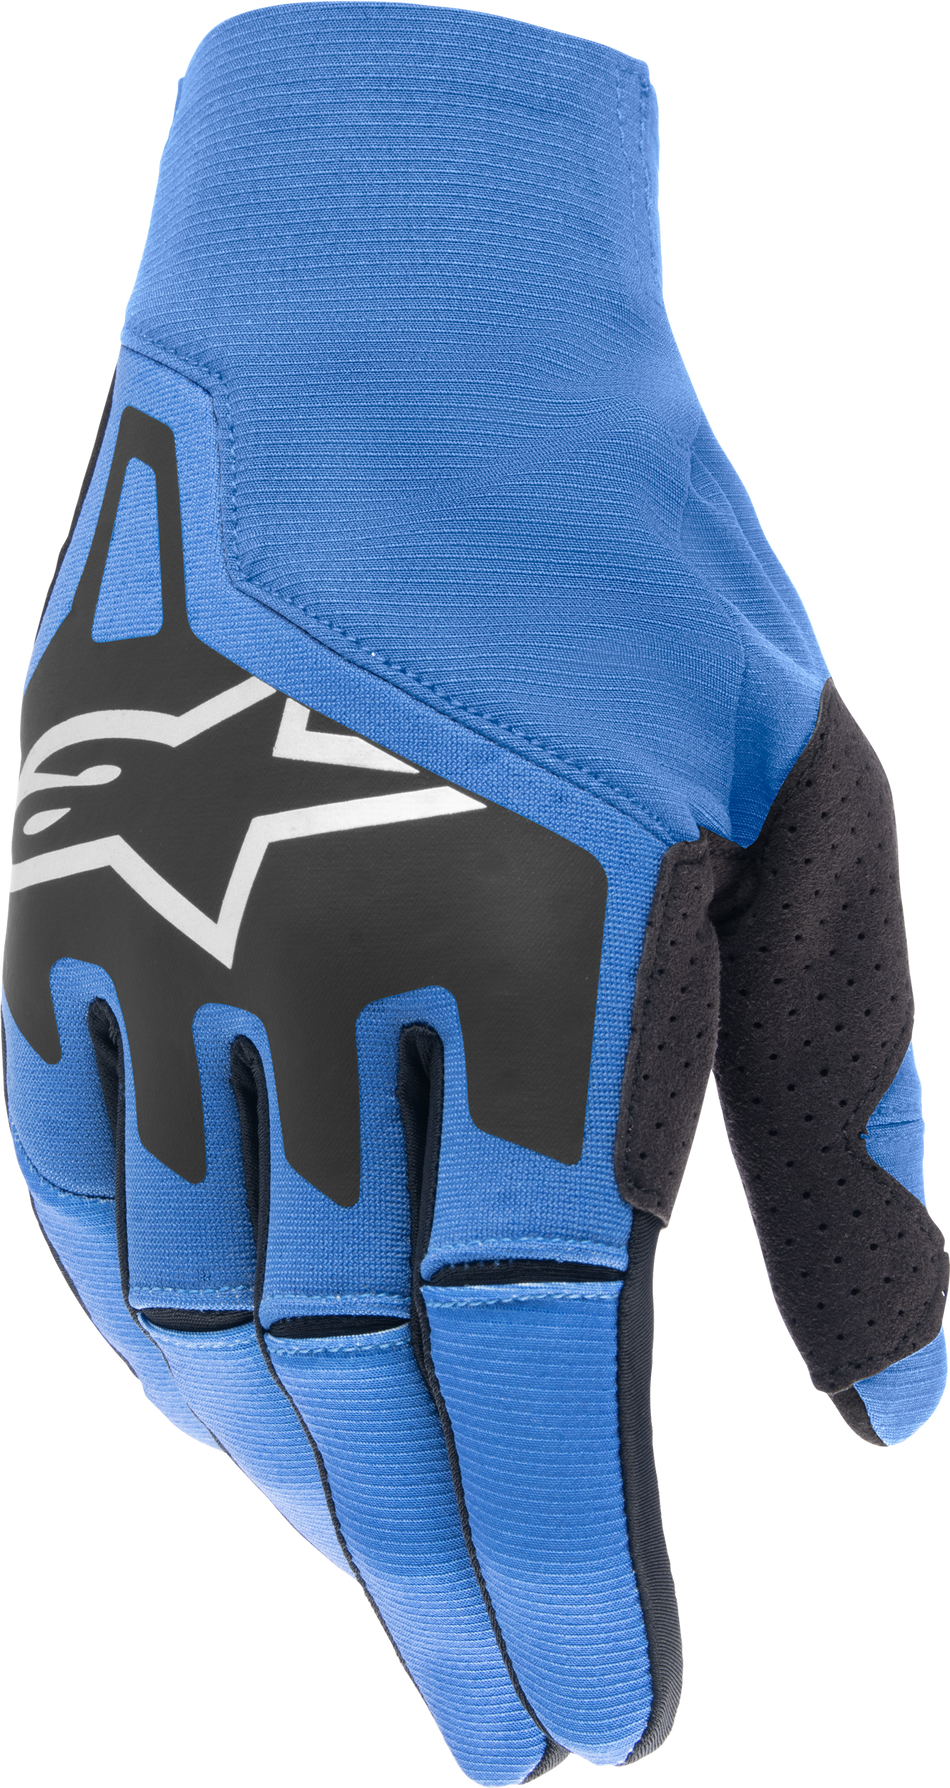 ALPINESTARS Techstar Gloves Blue Ram/Black Md 3561024-763-M